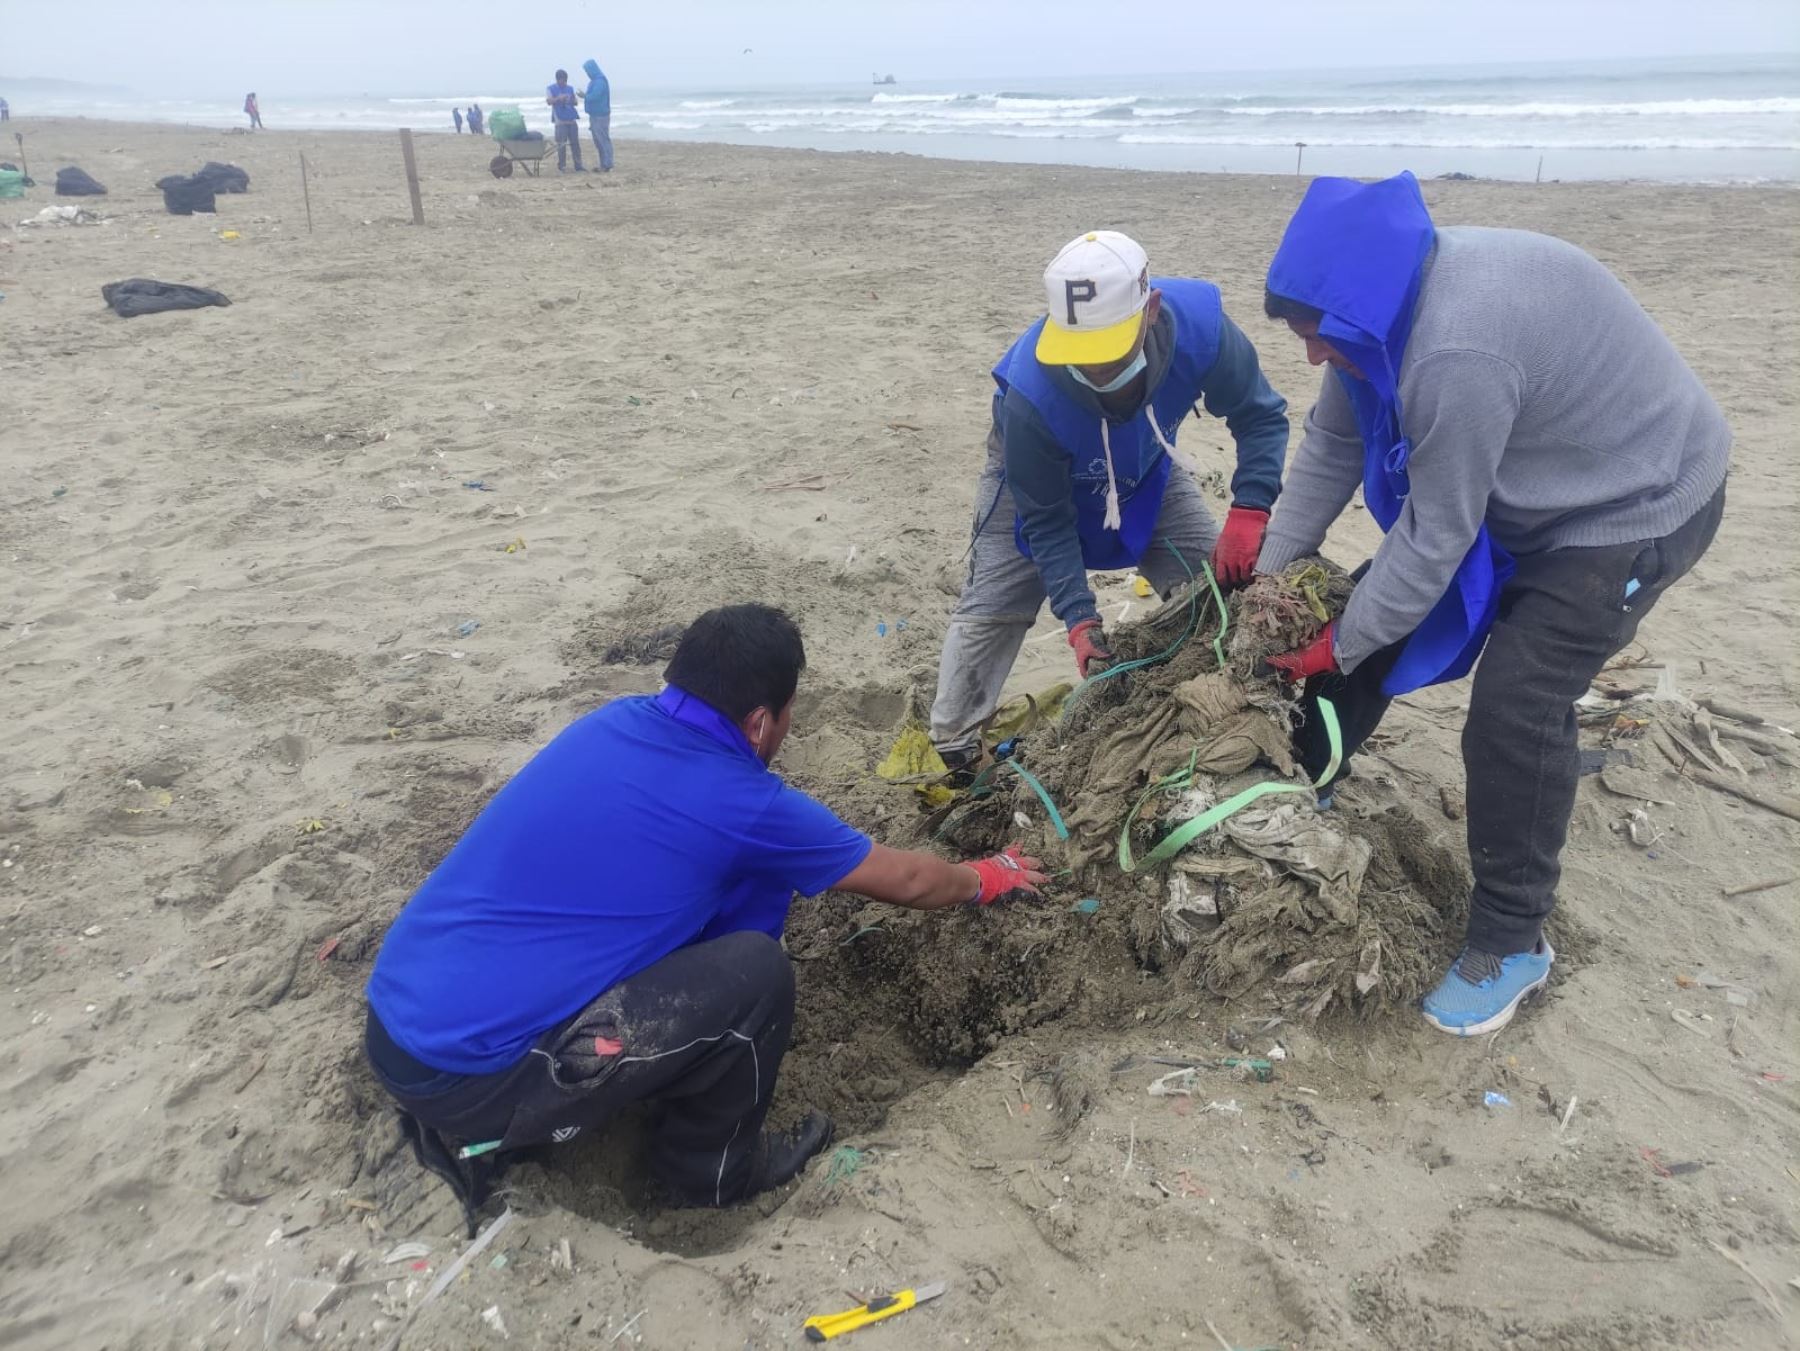 Voluntarios limpian playas de Ventanilla, las más contaminadas por basura marina en Perú, según la ONG Vida. Foto: ANDINA/difusión.